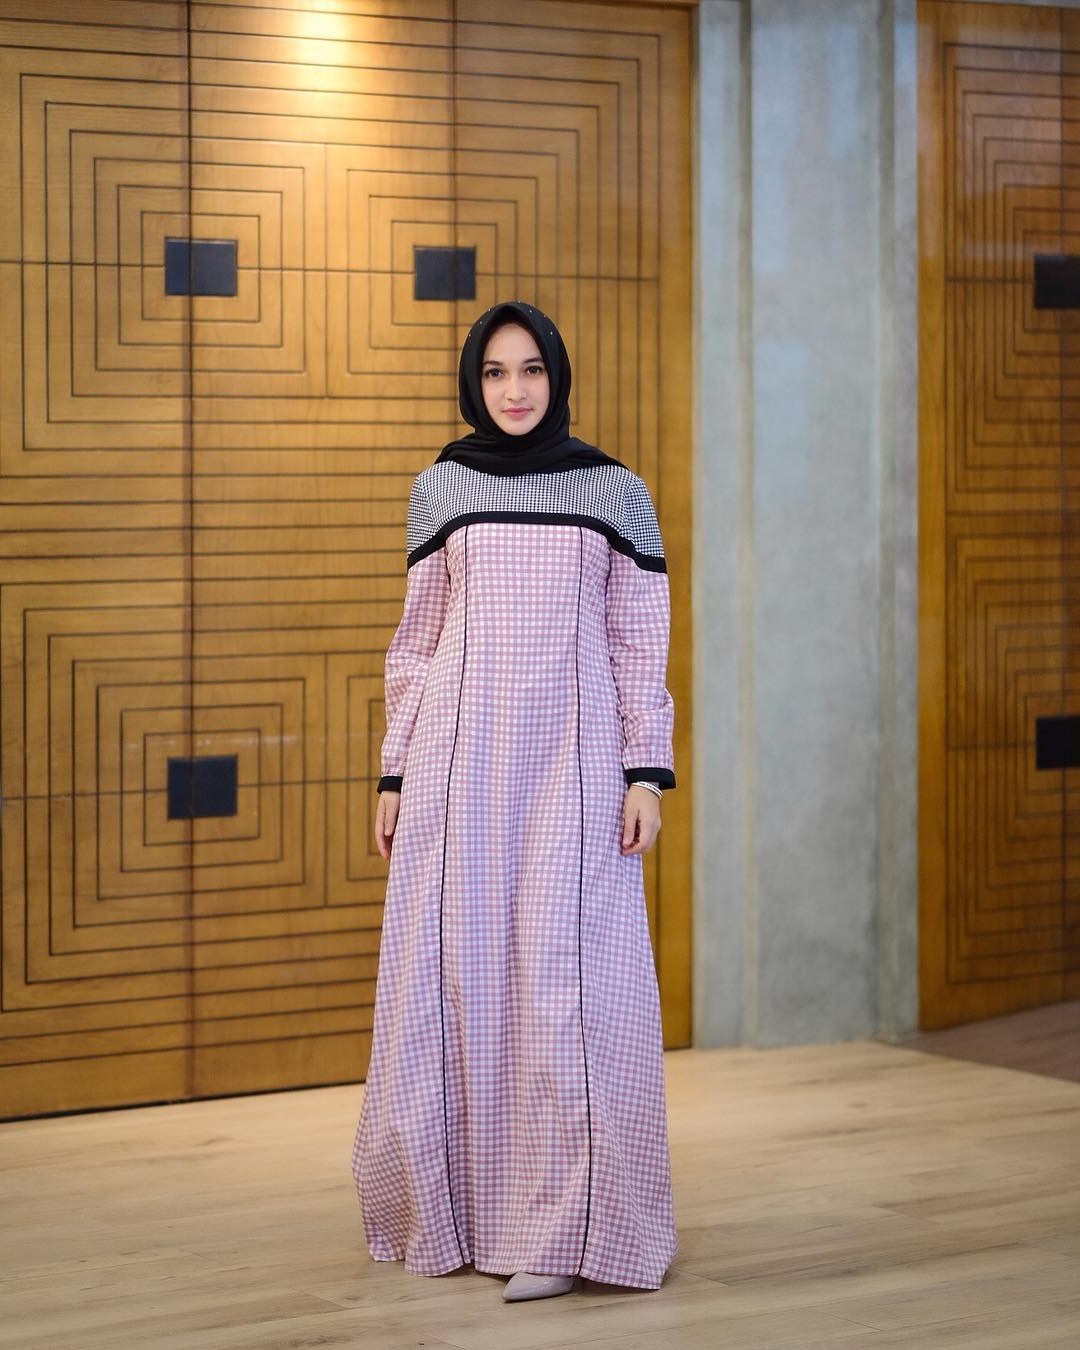 Design Contoh Model Baju Lebaran 2019 4pde Contoh Baju Gamis Terbaru 2019 Paling Populer – Model